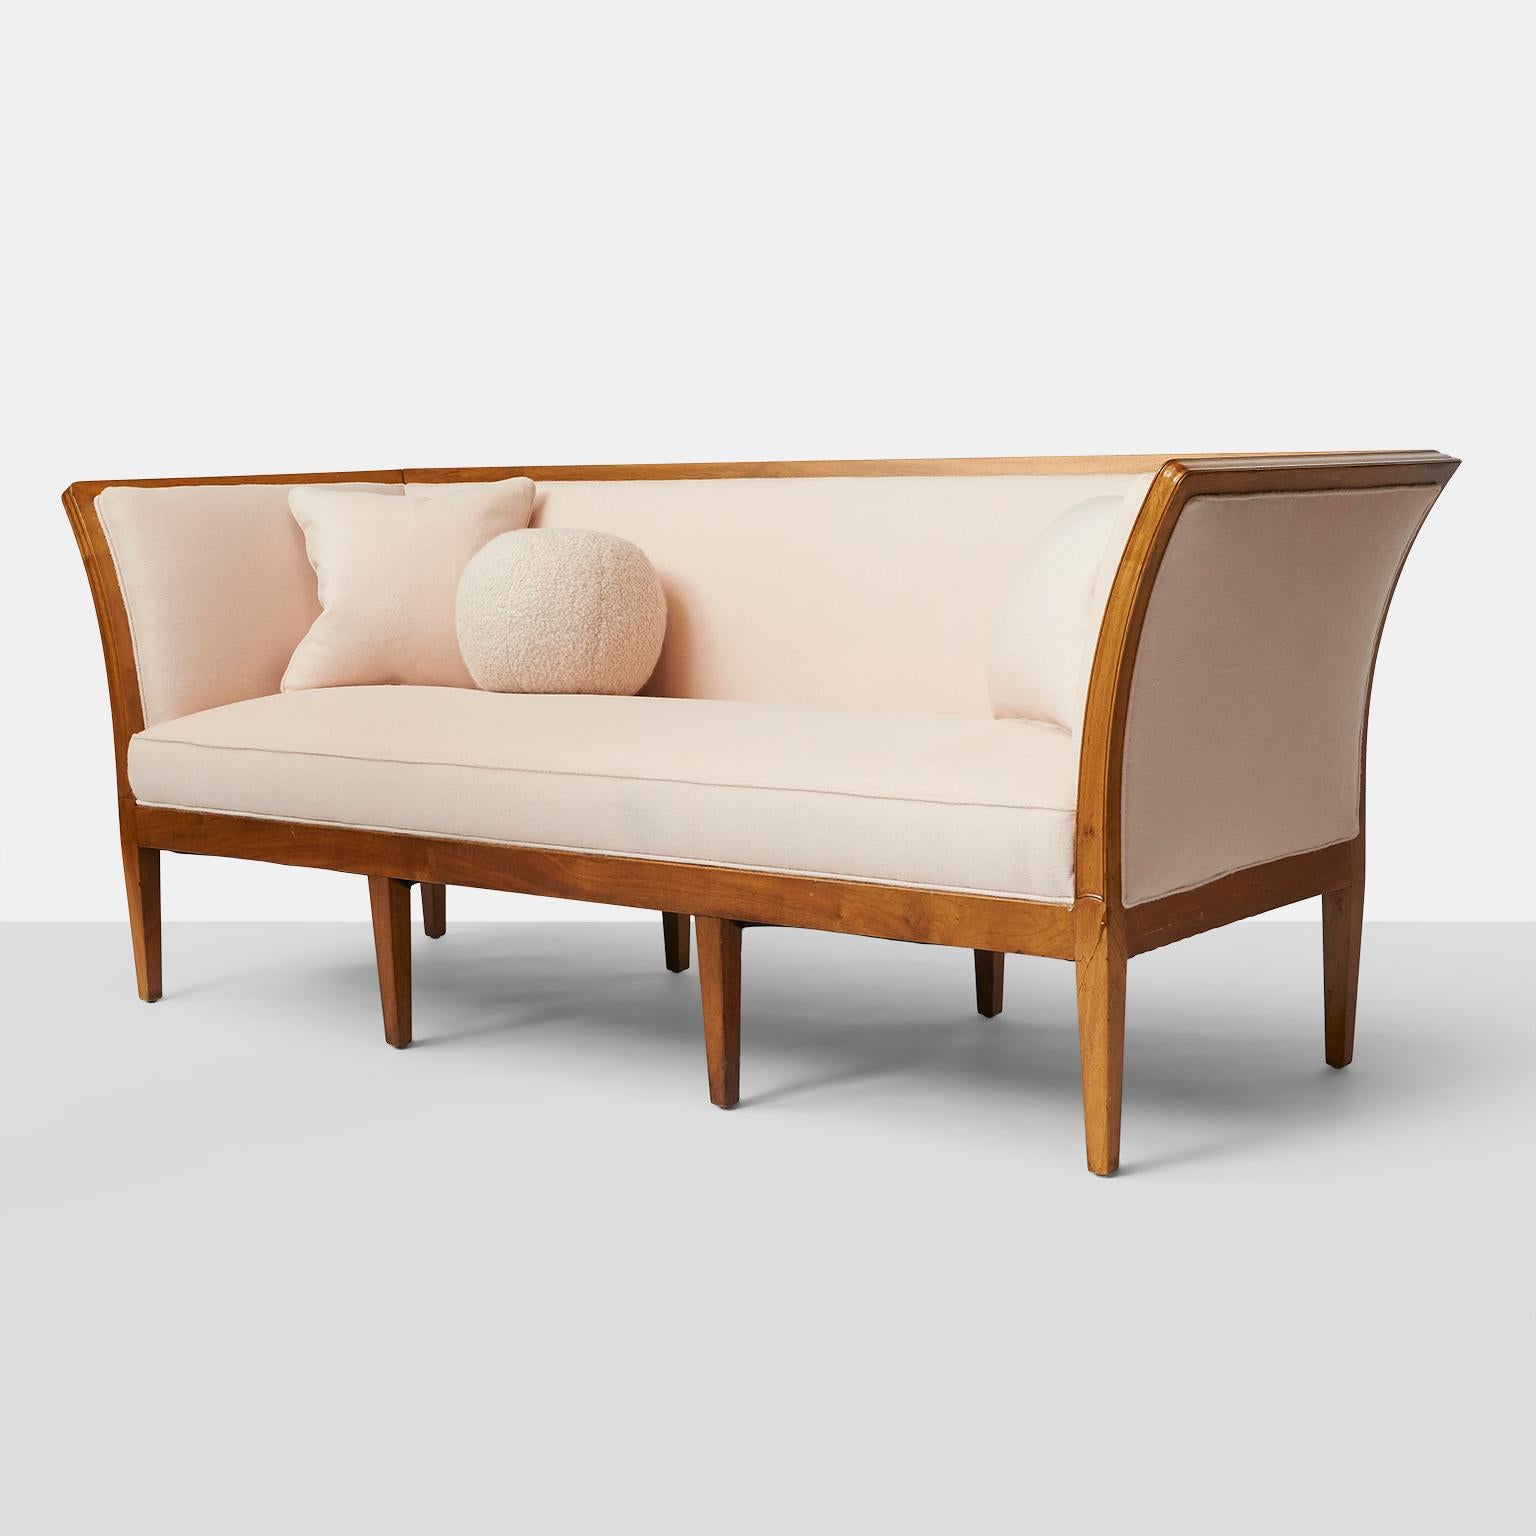 Ein elegantes Jacob Kjaer-Sofa mit 8 Beinen, festem Sitz und Rückenlehne, restauriert in einem luxuriösen blassrosa Prima Alpaca-Stoff von Sandra Jordan.